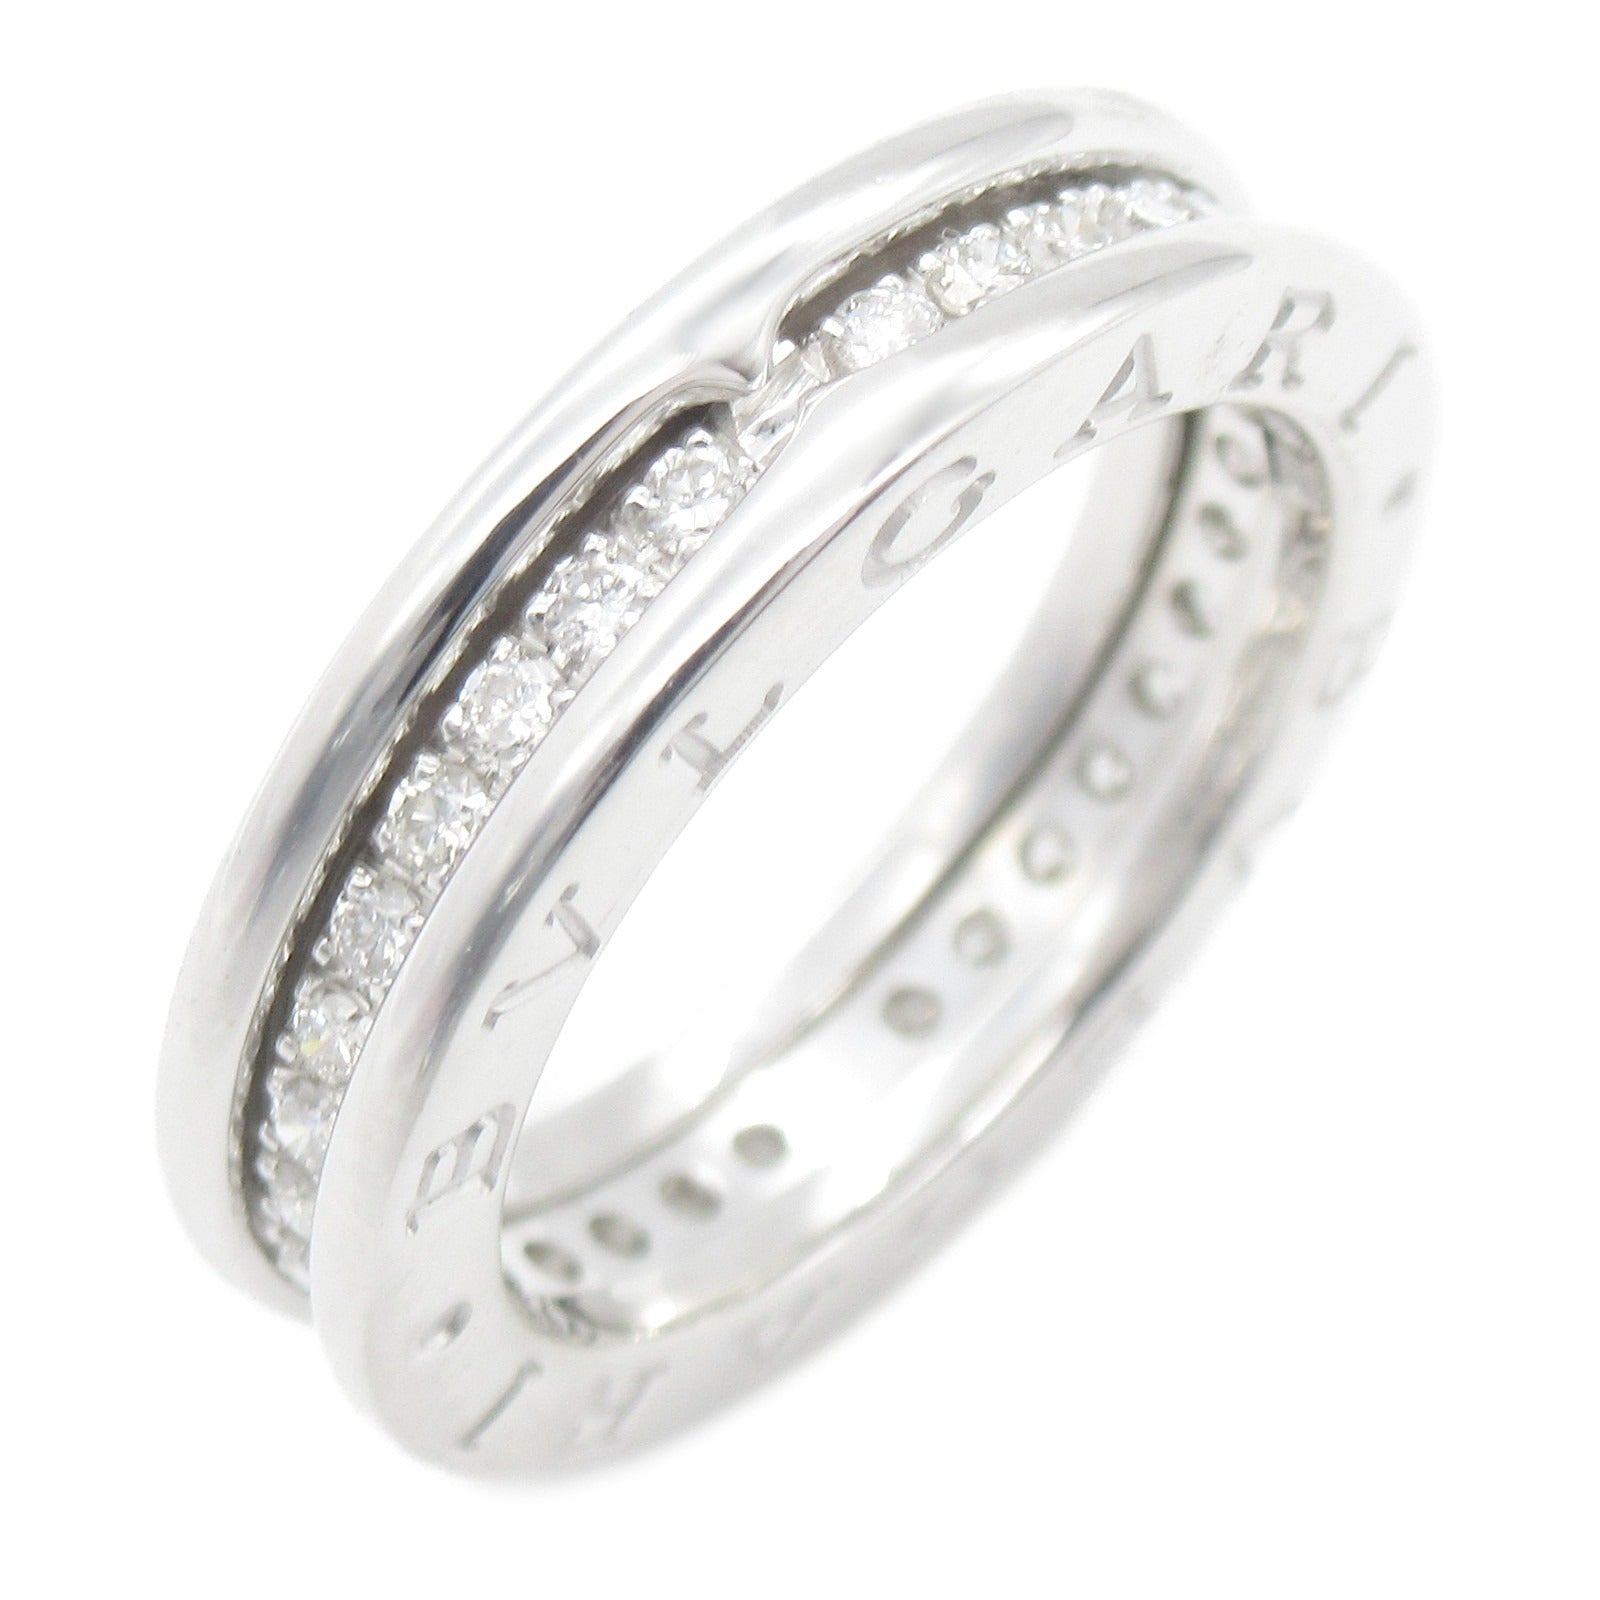 Bulgari BVLGARI B-zero1 Beezero One Ring Full Diamond Ring Ring Jewelry K18WG (White G) Diamond   Clearance